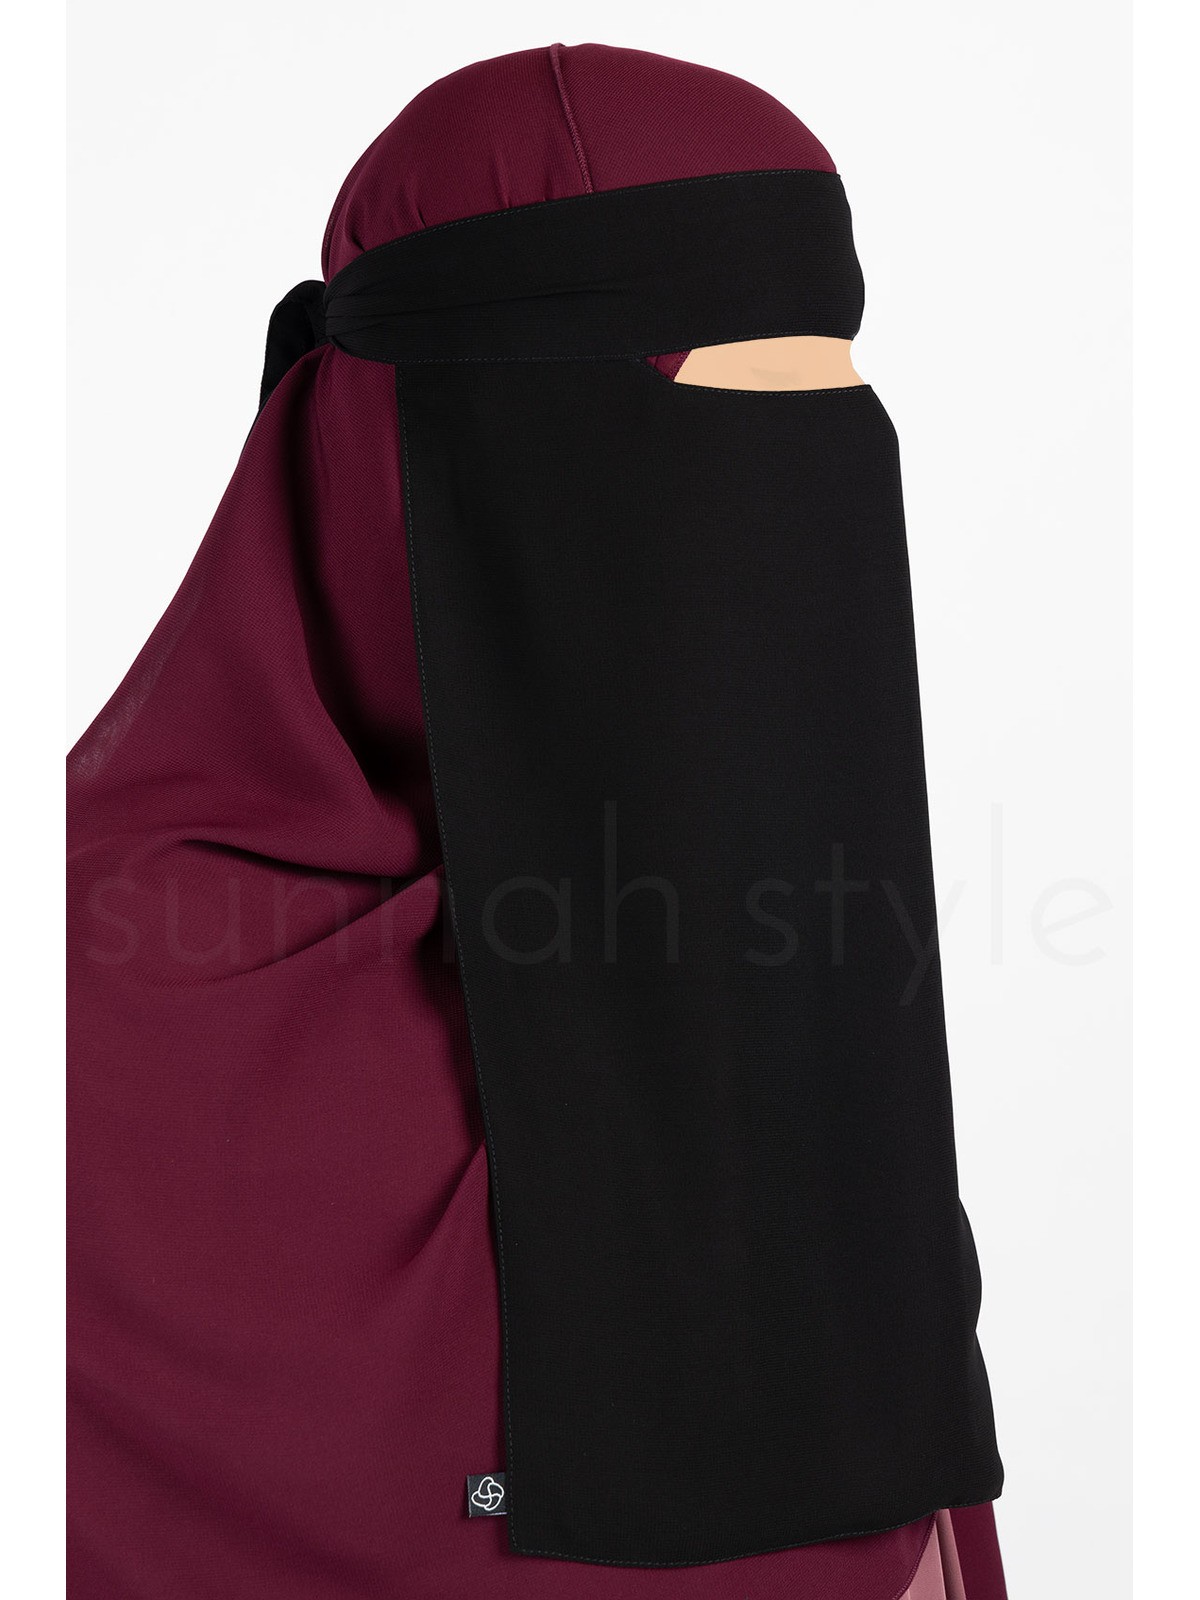 Sunnah Style - Narrow No-Pinch One Layer Niqab (Black)